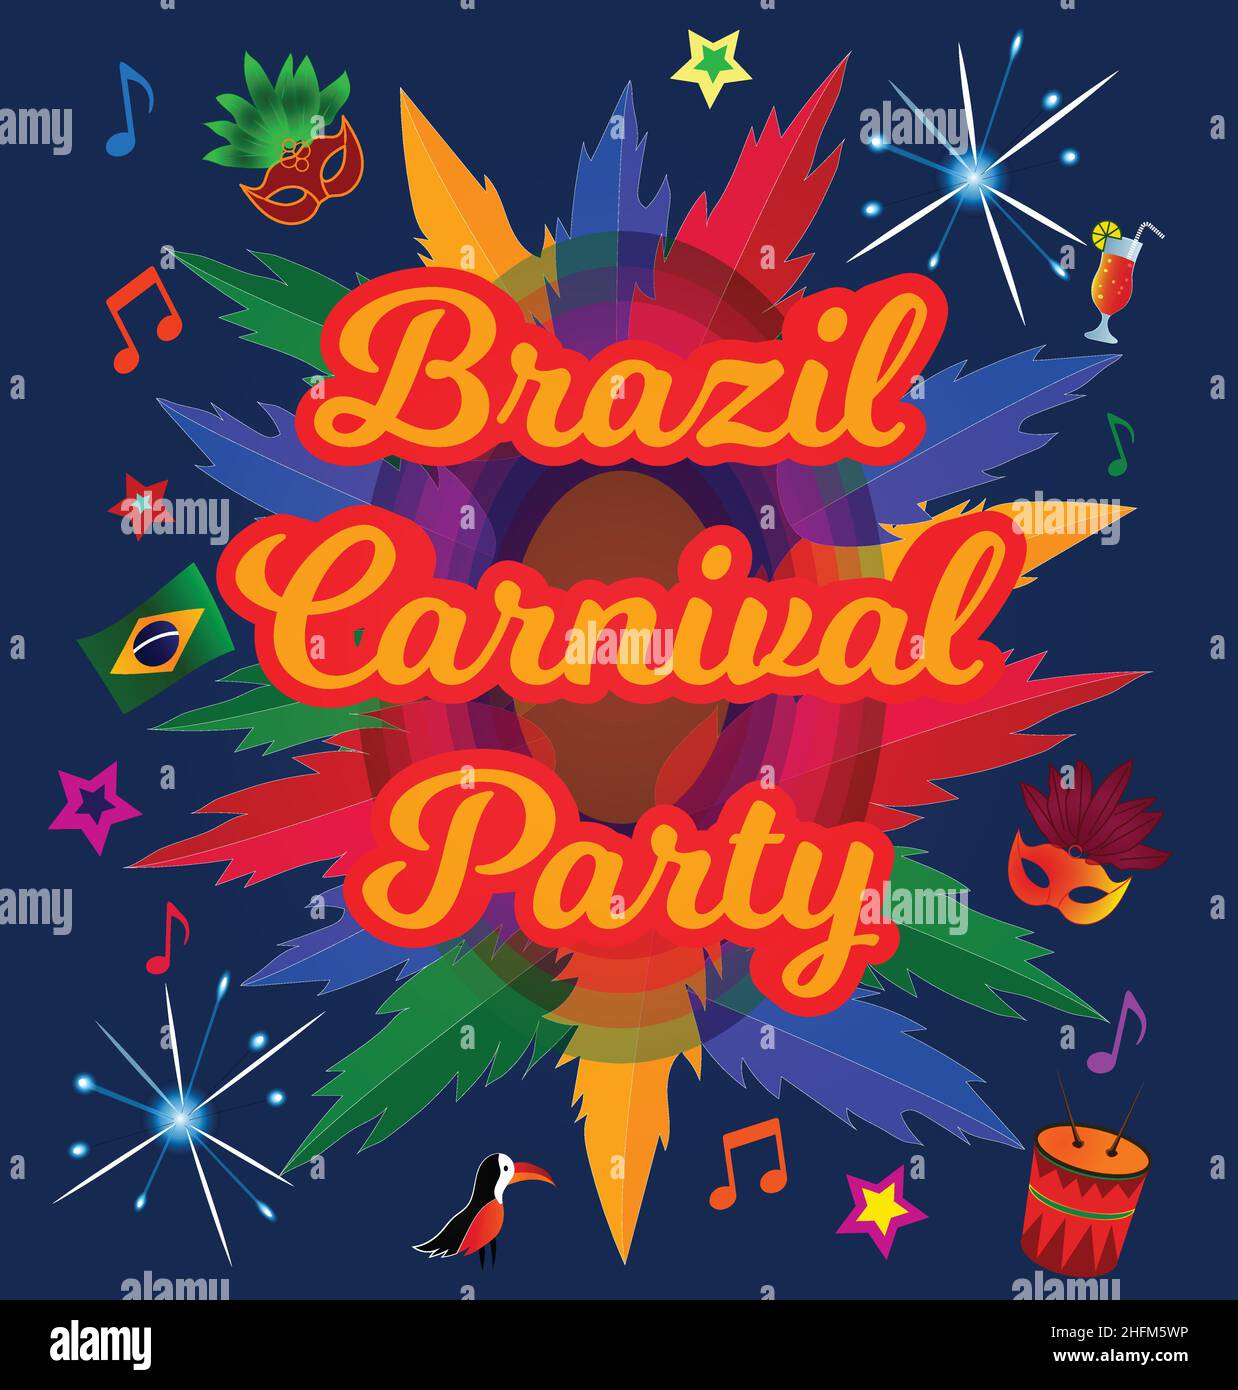 Brésil Carnaval Party, Mardi gras, pina colada, tambours, masque,musique, drapeau, affiche, illustration vectorielle de prospectus Illustration de Vecteur